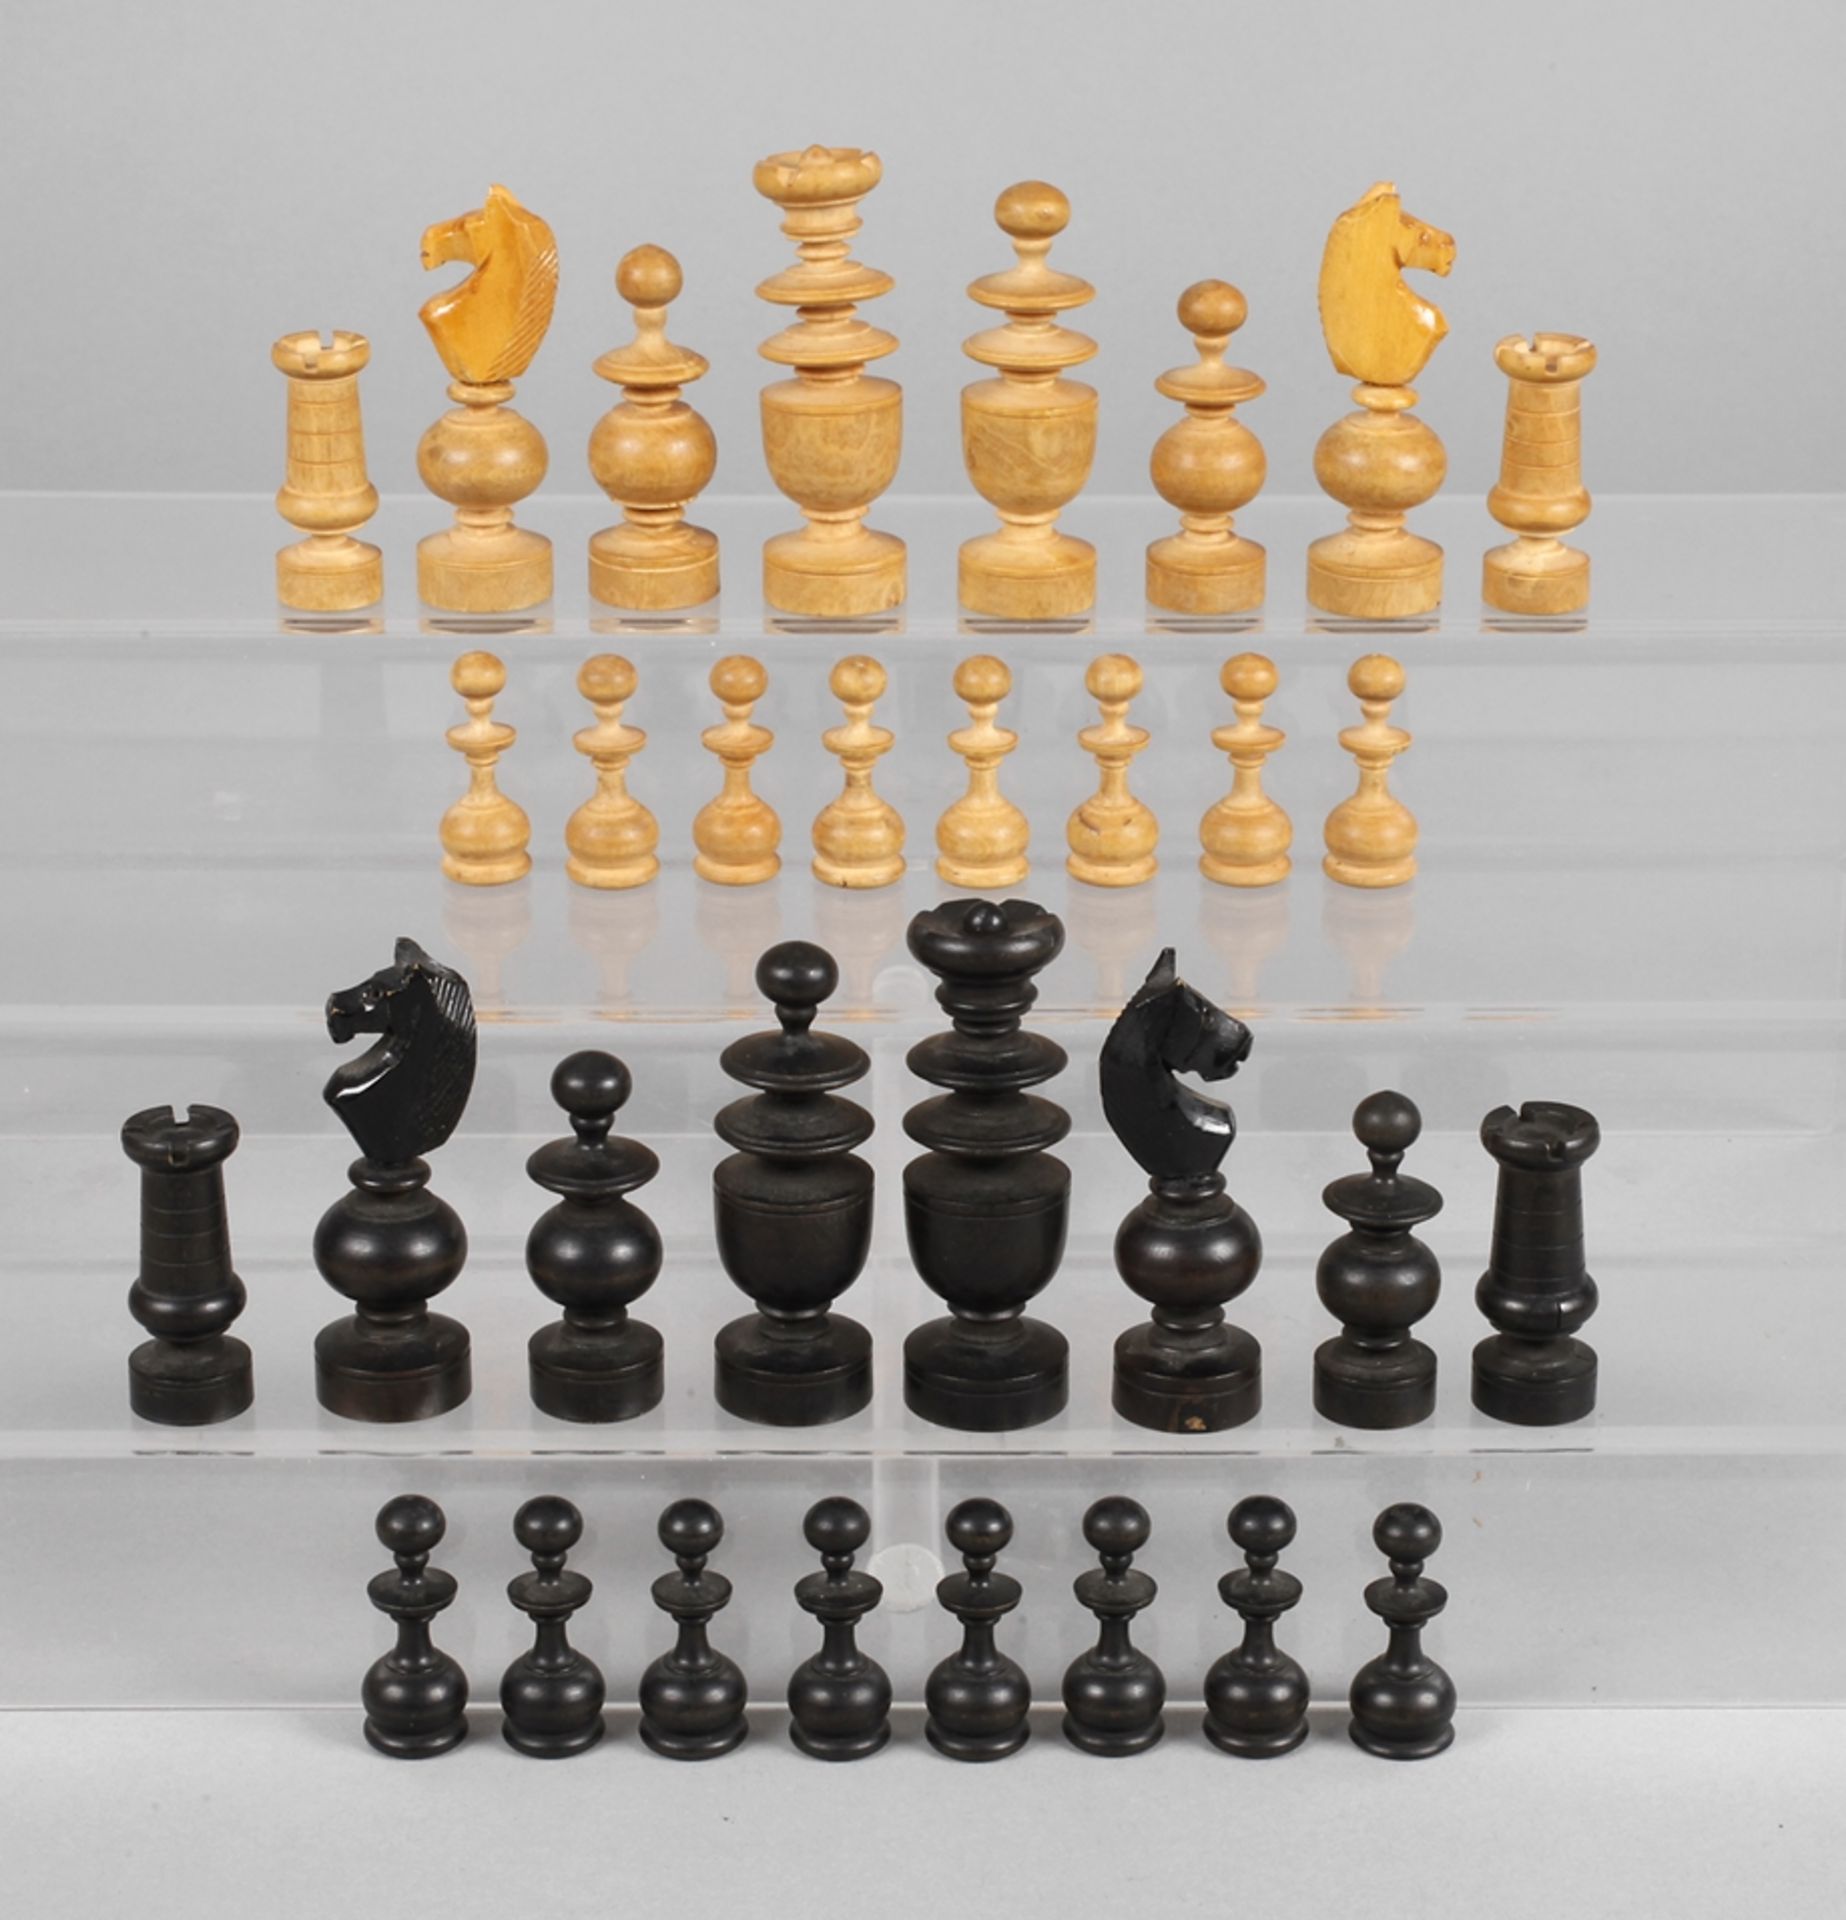 Schachspiel19. Jh., Holz gedrechselt, teils geschwärzt, kompletter Satz Spielfiguren, leichte